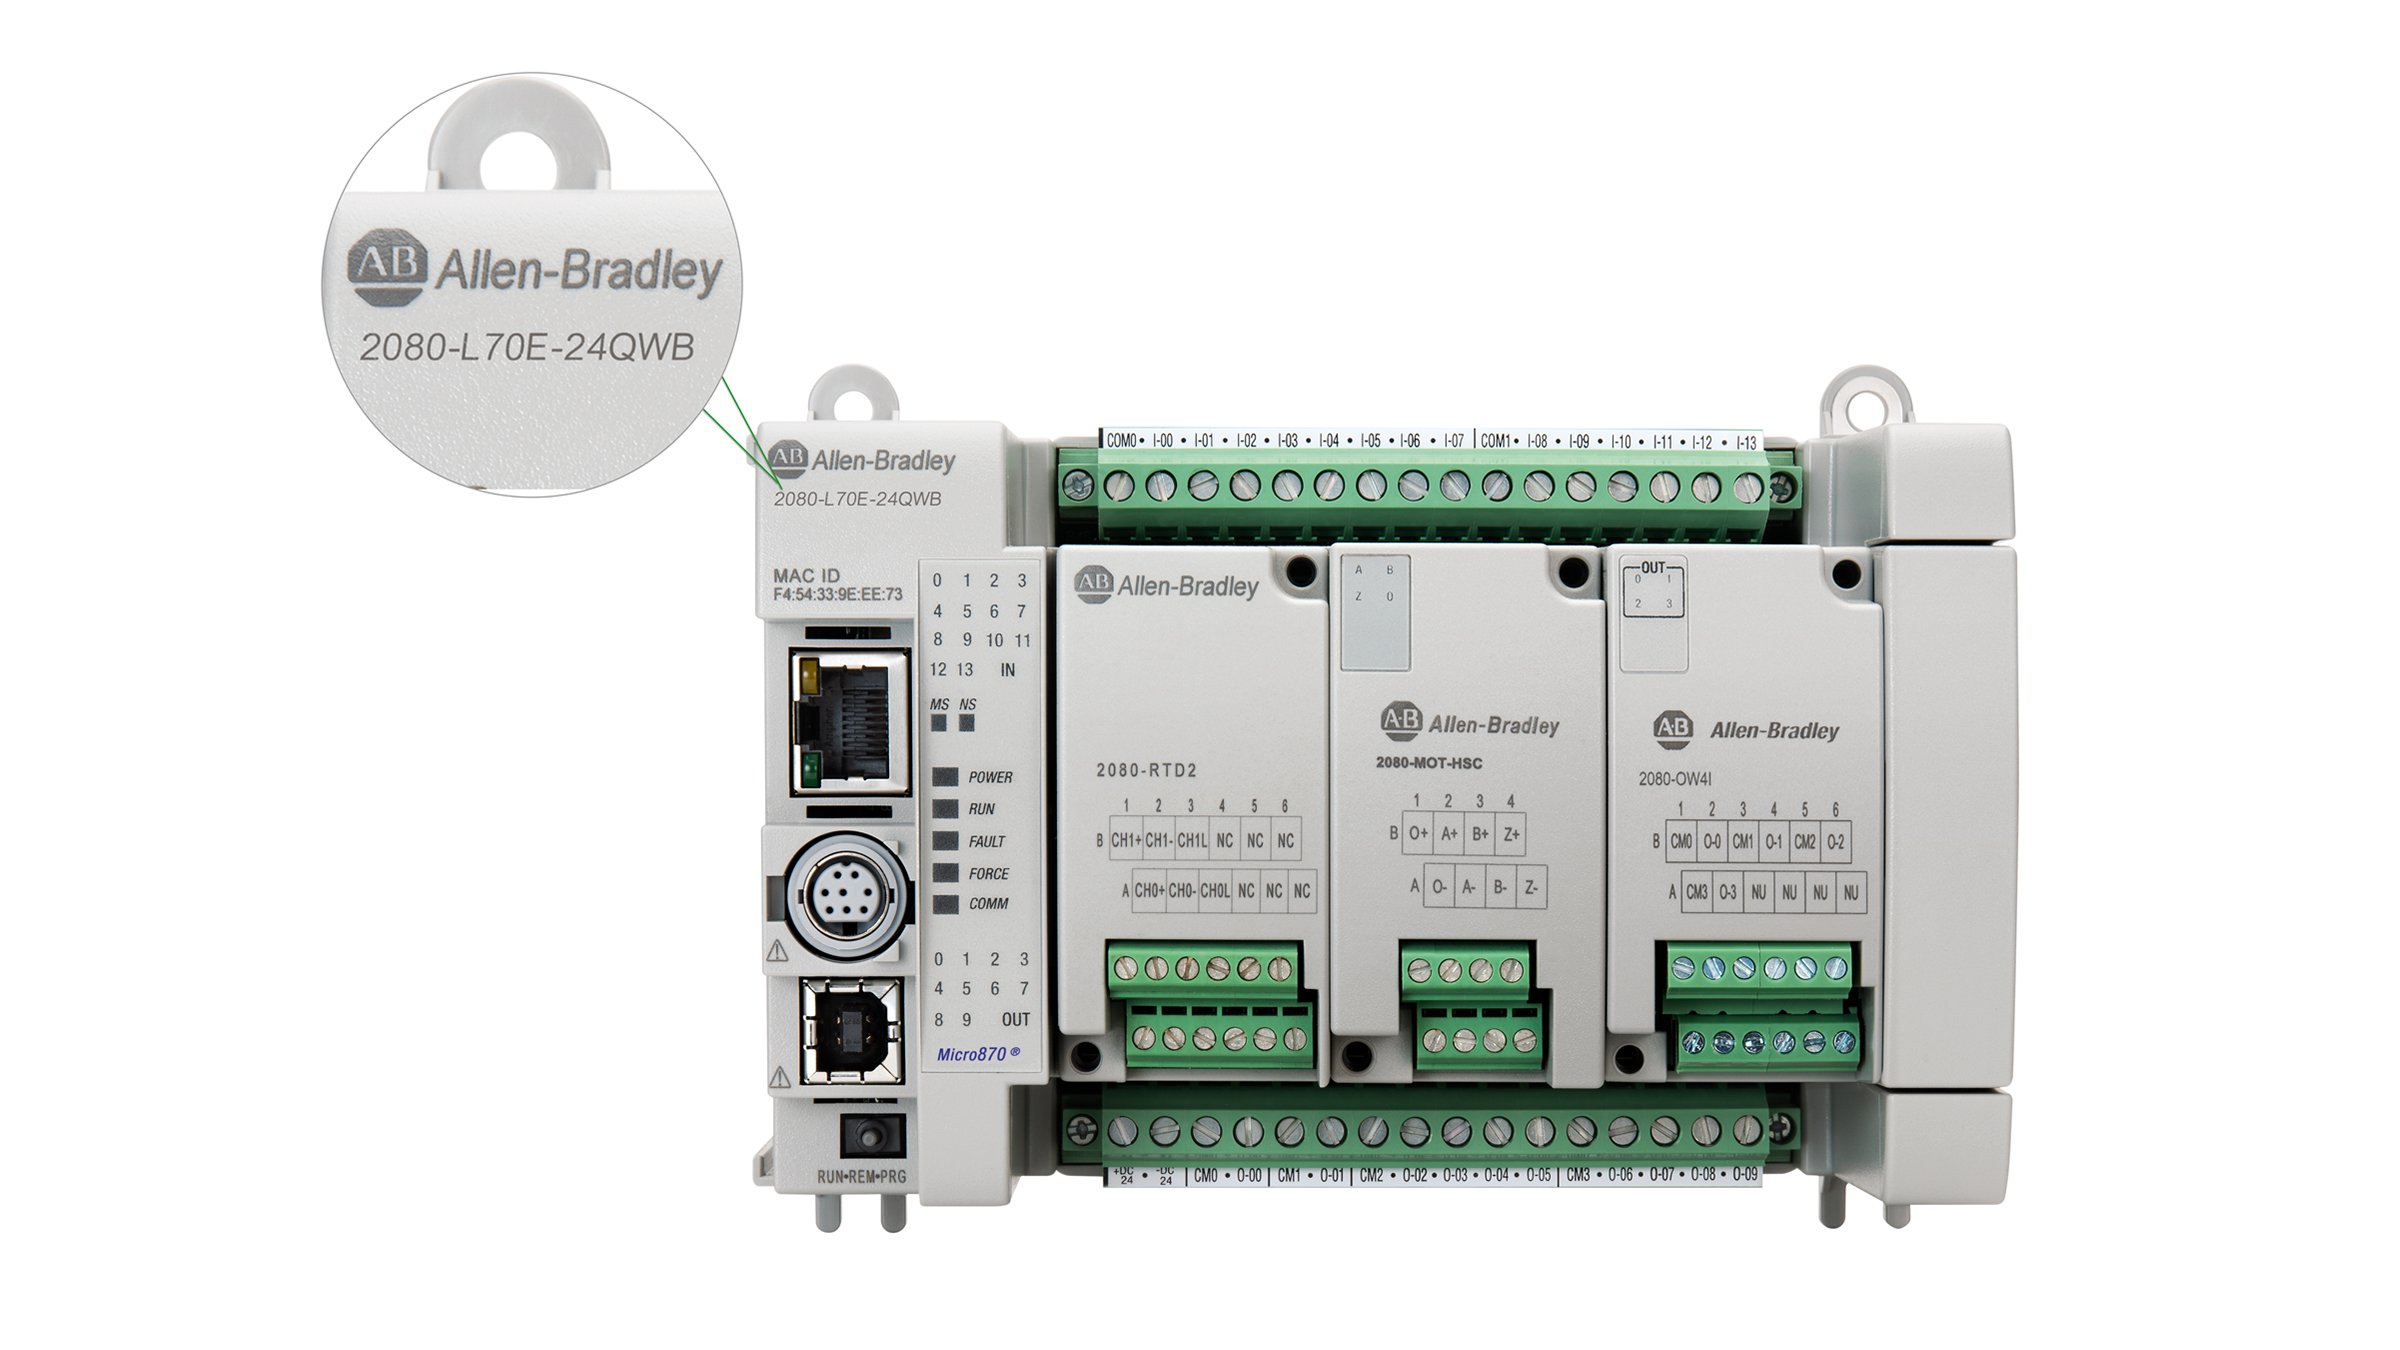 Allen-Bradley Micro870 컨트롤러, 카탈로그 2080-L70E-24QWB의 전면 보기, 컨트롤러의 왼쪽 상단 모서리에 확대된 카탈로그 넘버가 표시된 팝업 창이 있습니다.